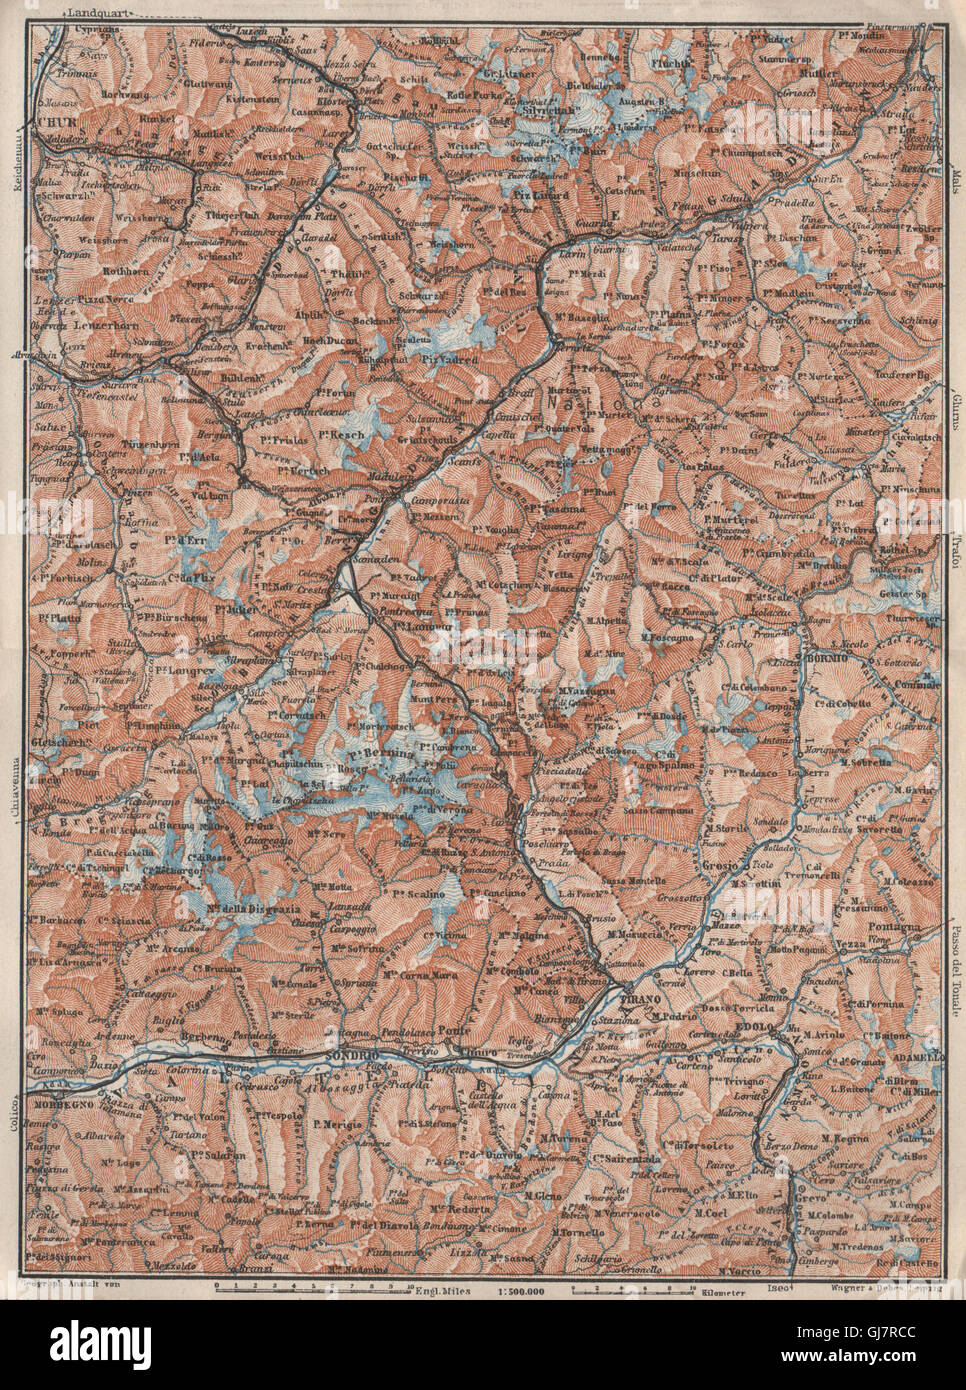 ENGADINE/VAL TELLINA. Davos Arosa Sils Bormio Livigno Sondrio Chur, 1928 map Stock Photo